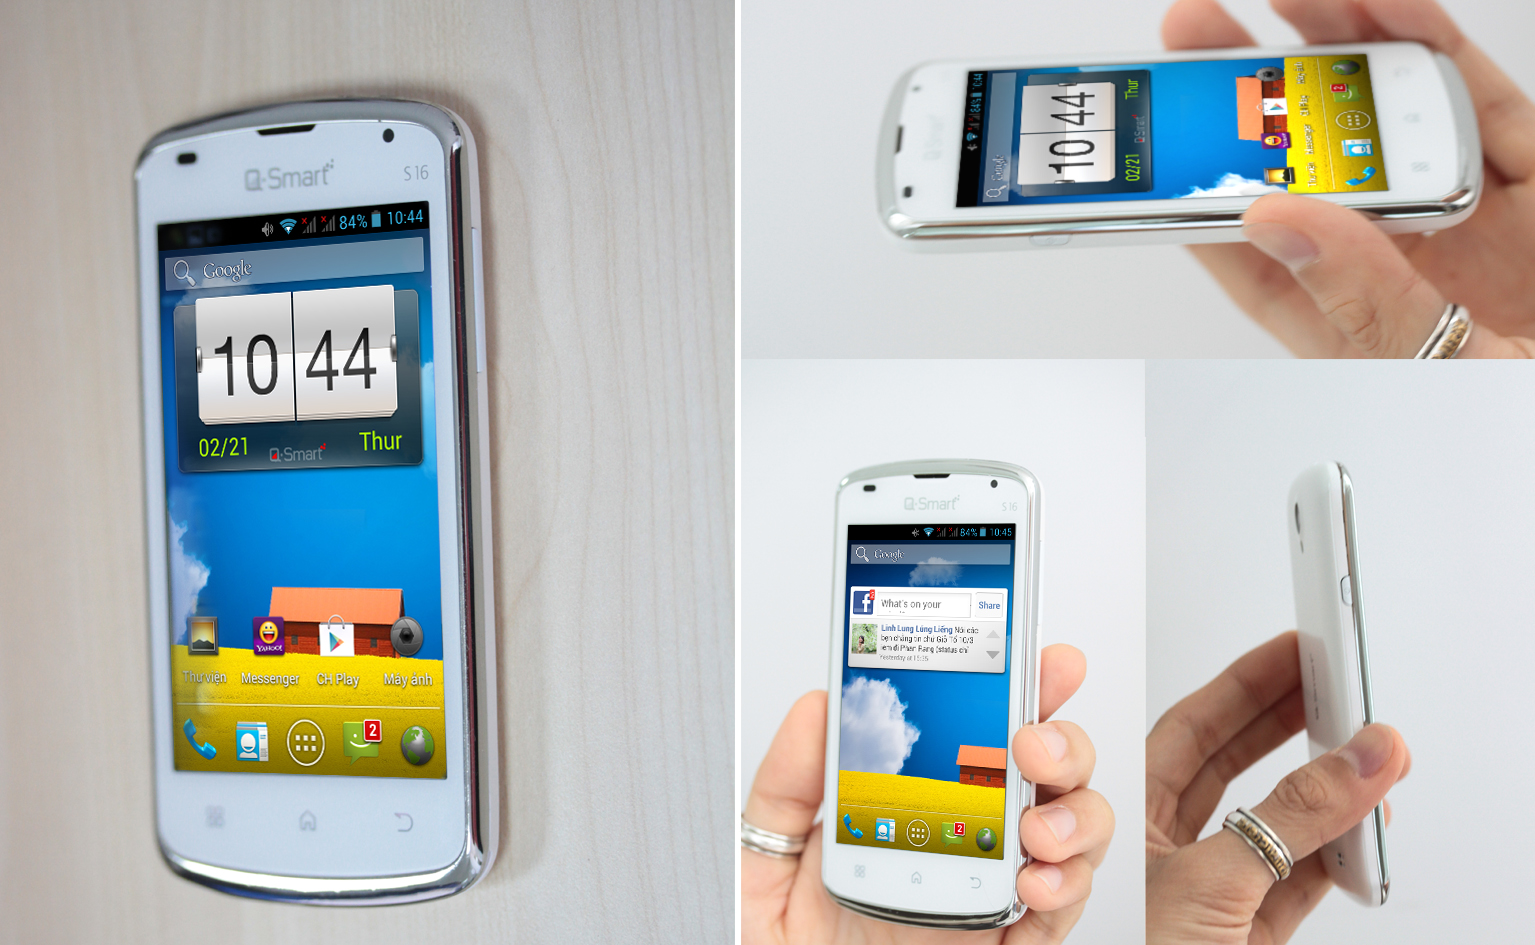 Q-Smart S16: Android 4.1 Jelly Bean, màn hình 4 inch độ phân giải WVGA 1